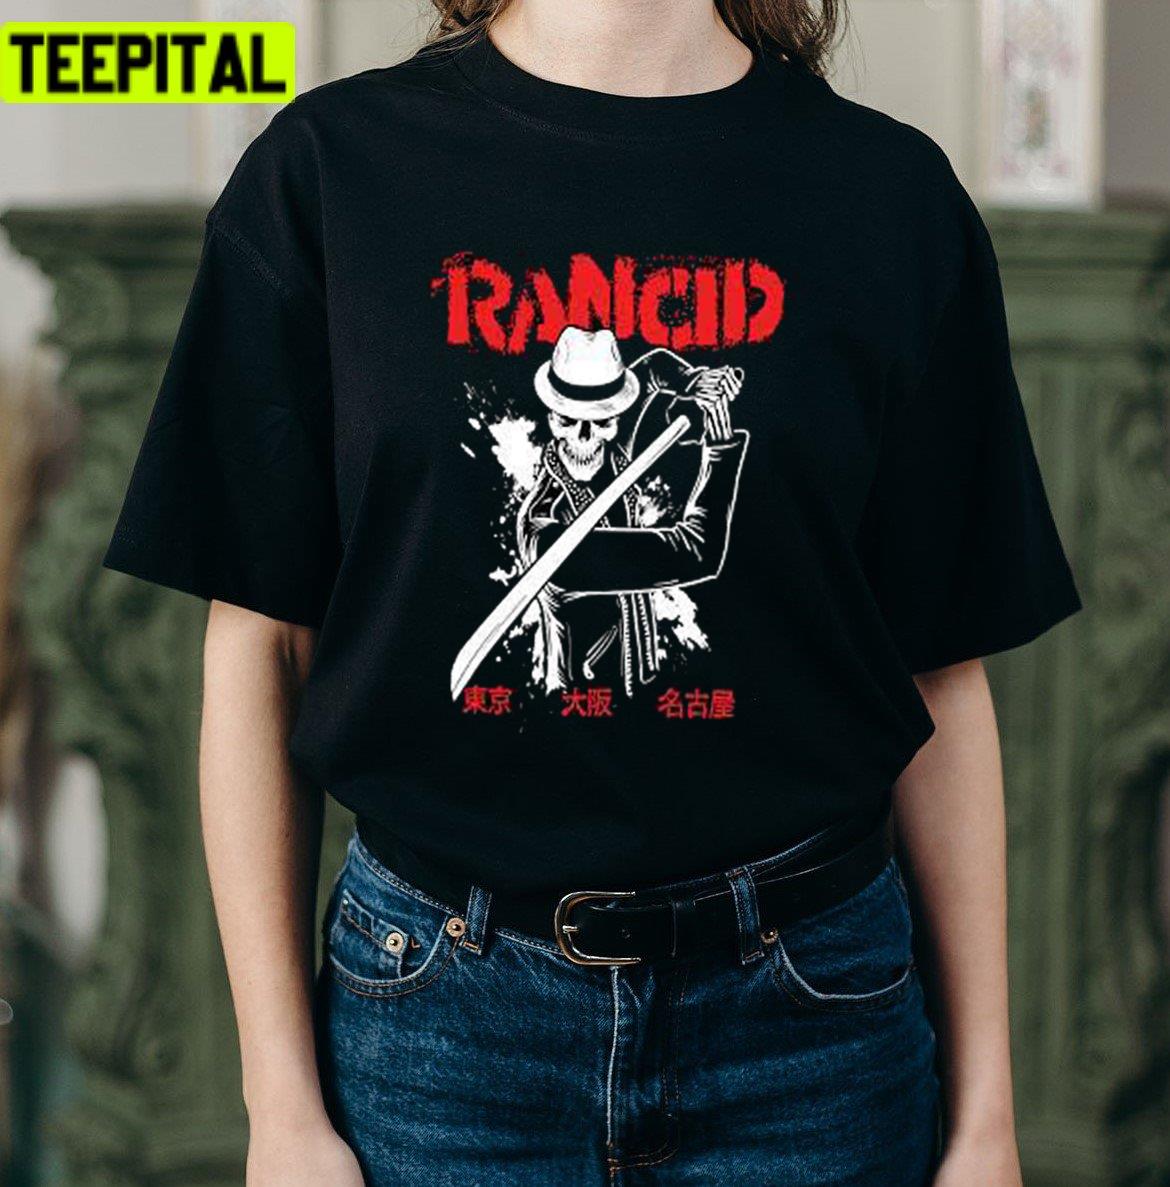 Letsgo Samurai Rancid Band Unisex T-Shirt